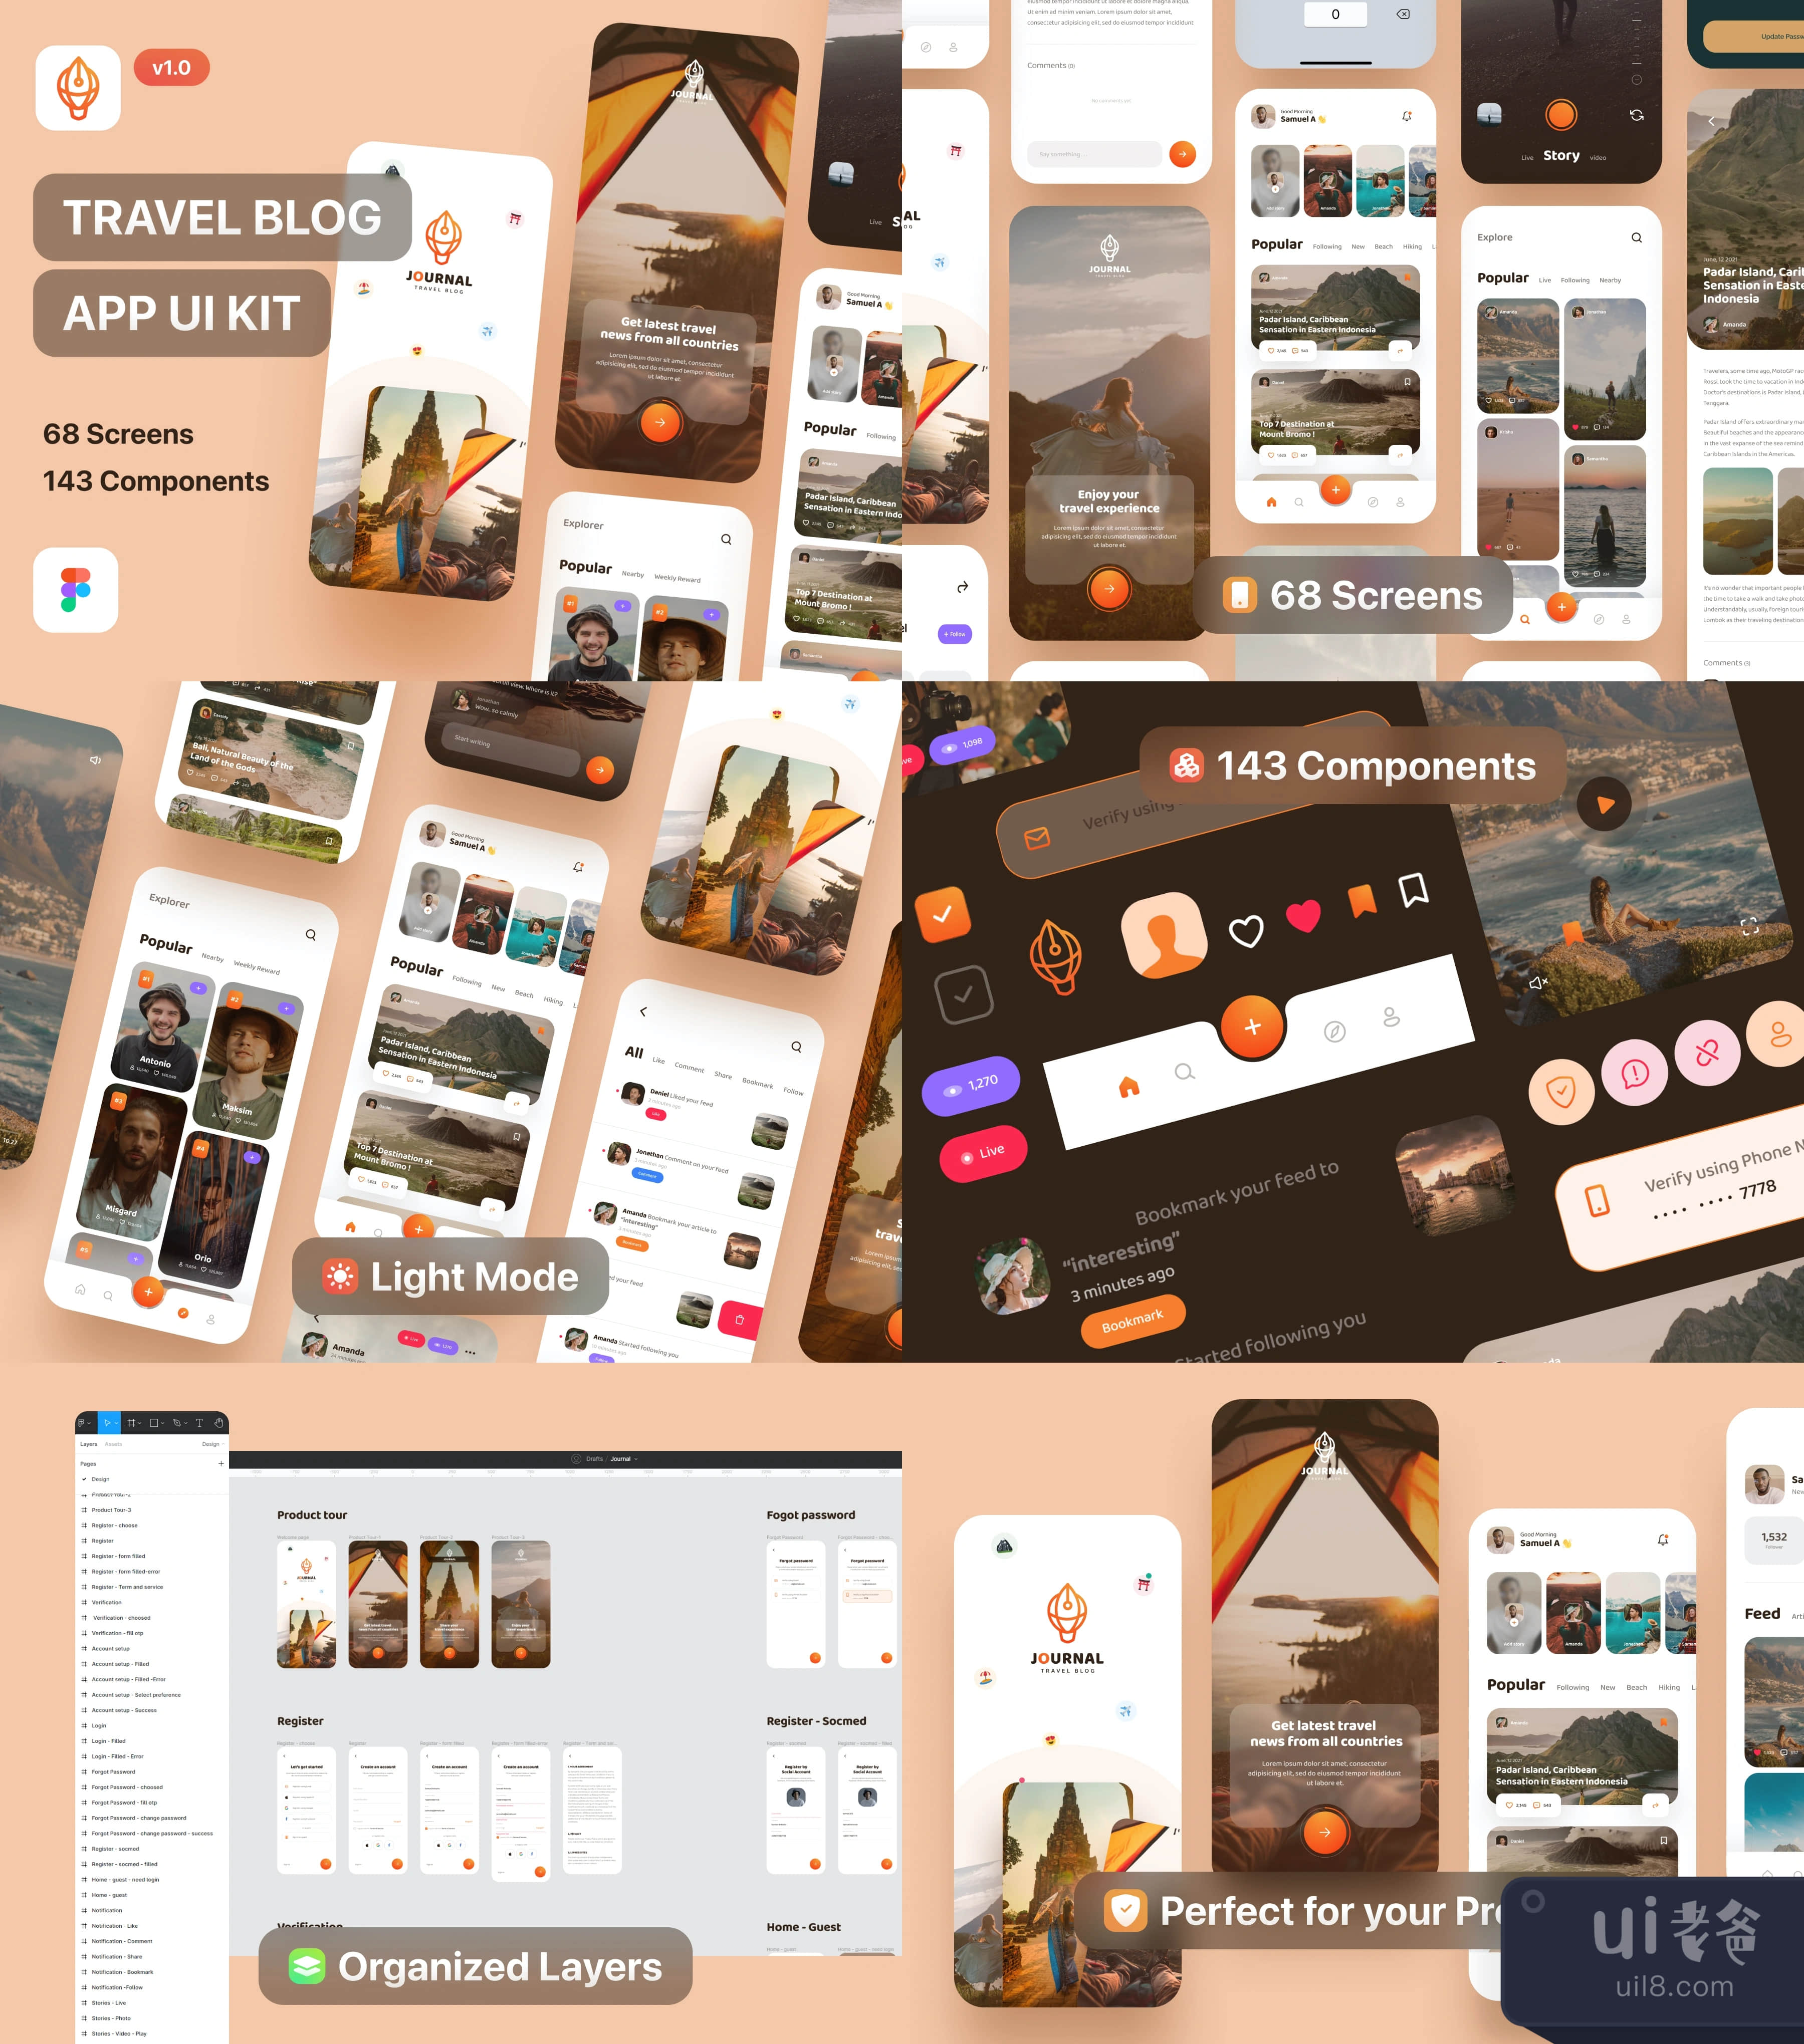 日记 - 旅行博客应用UI套件轻模式 (Journal - Travel Blog App UI K插图